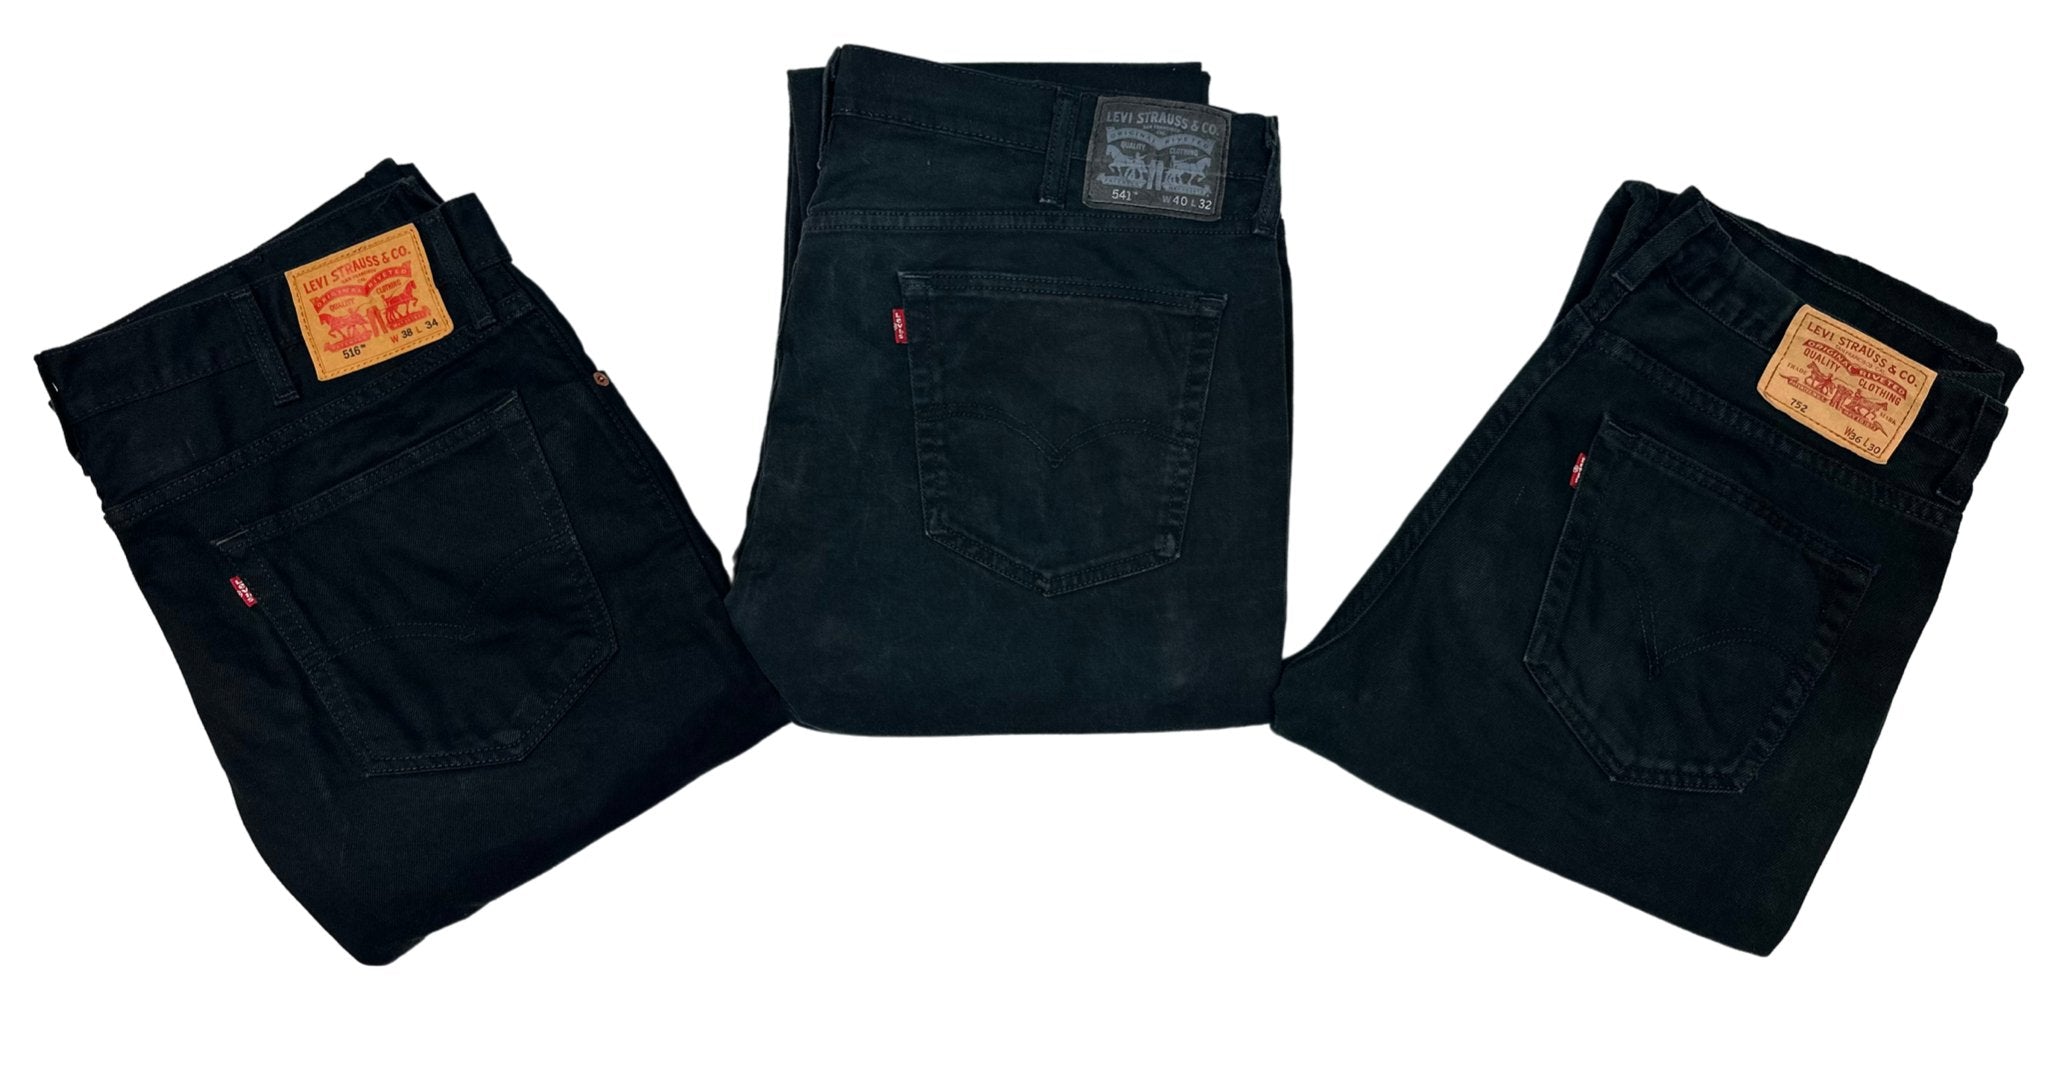 Vintage Levi's Black Jeans - Waist 29 - Length 30 - Vintage Superstore Online